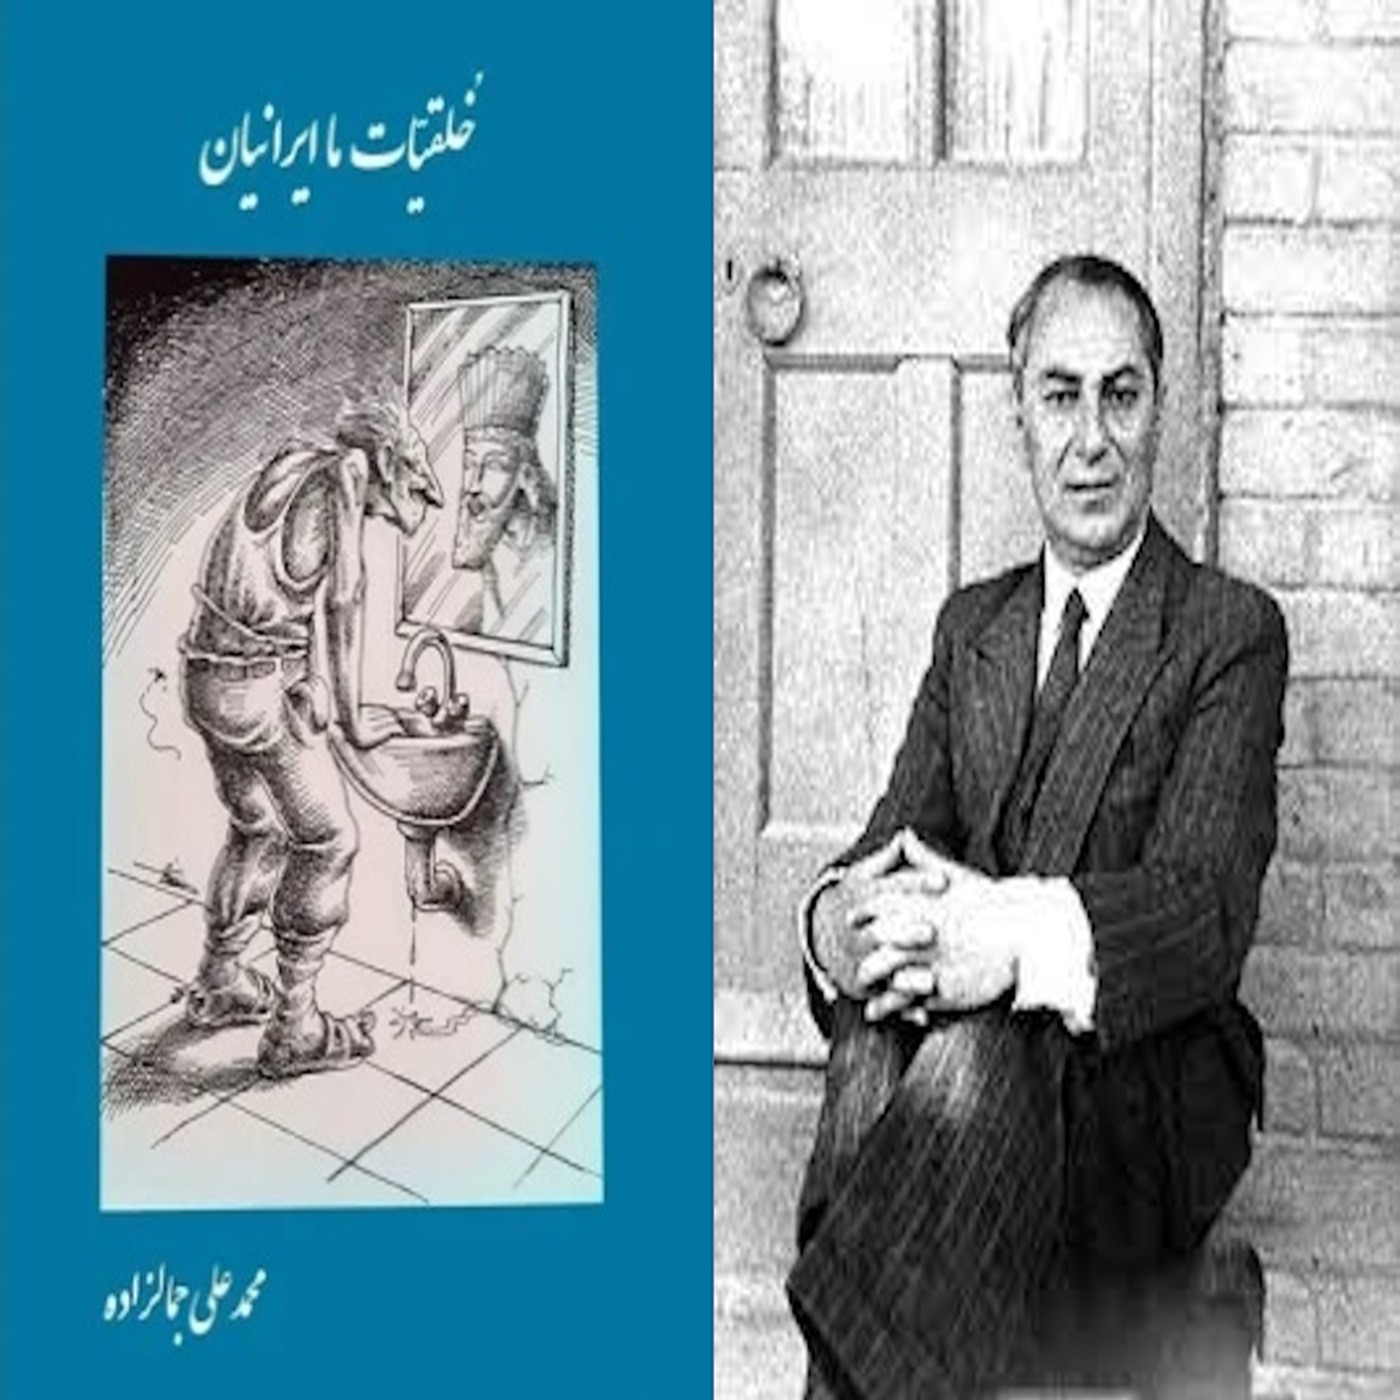 خلقیات ما ایرانیان نوشته سید محمدعلی جمالزاده: بخش دو از پنچ